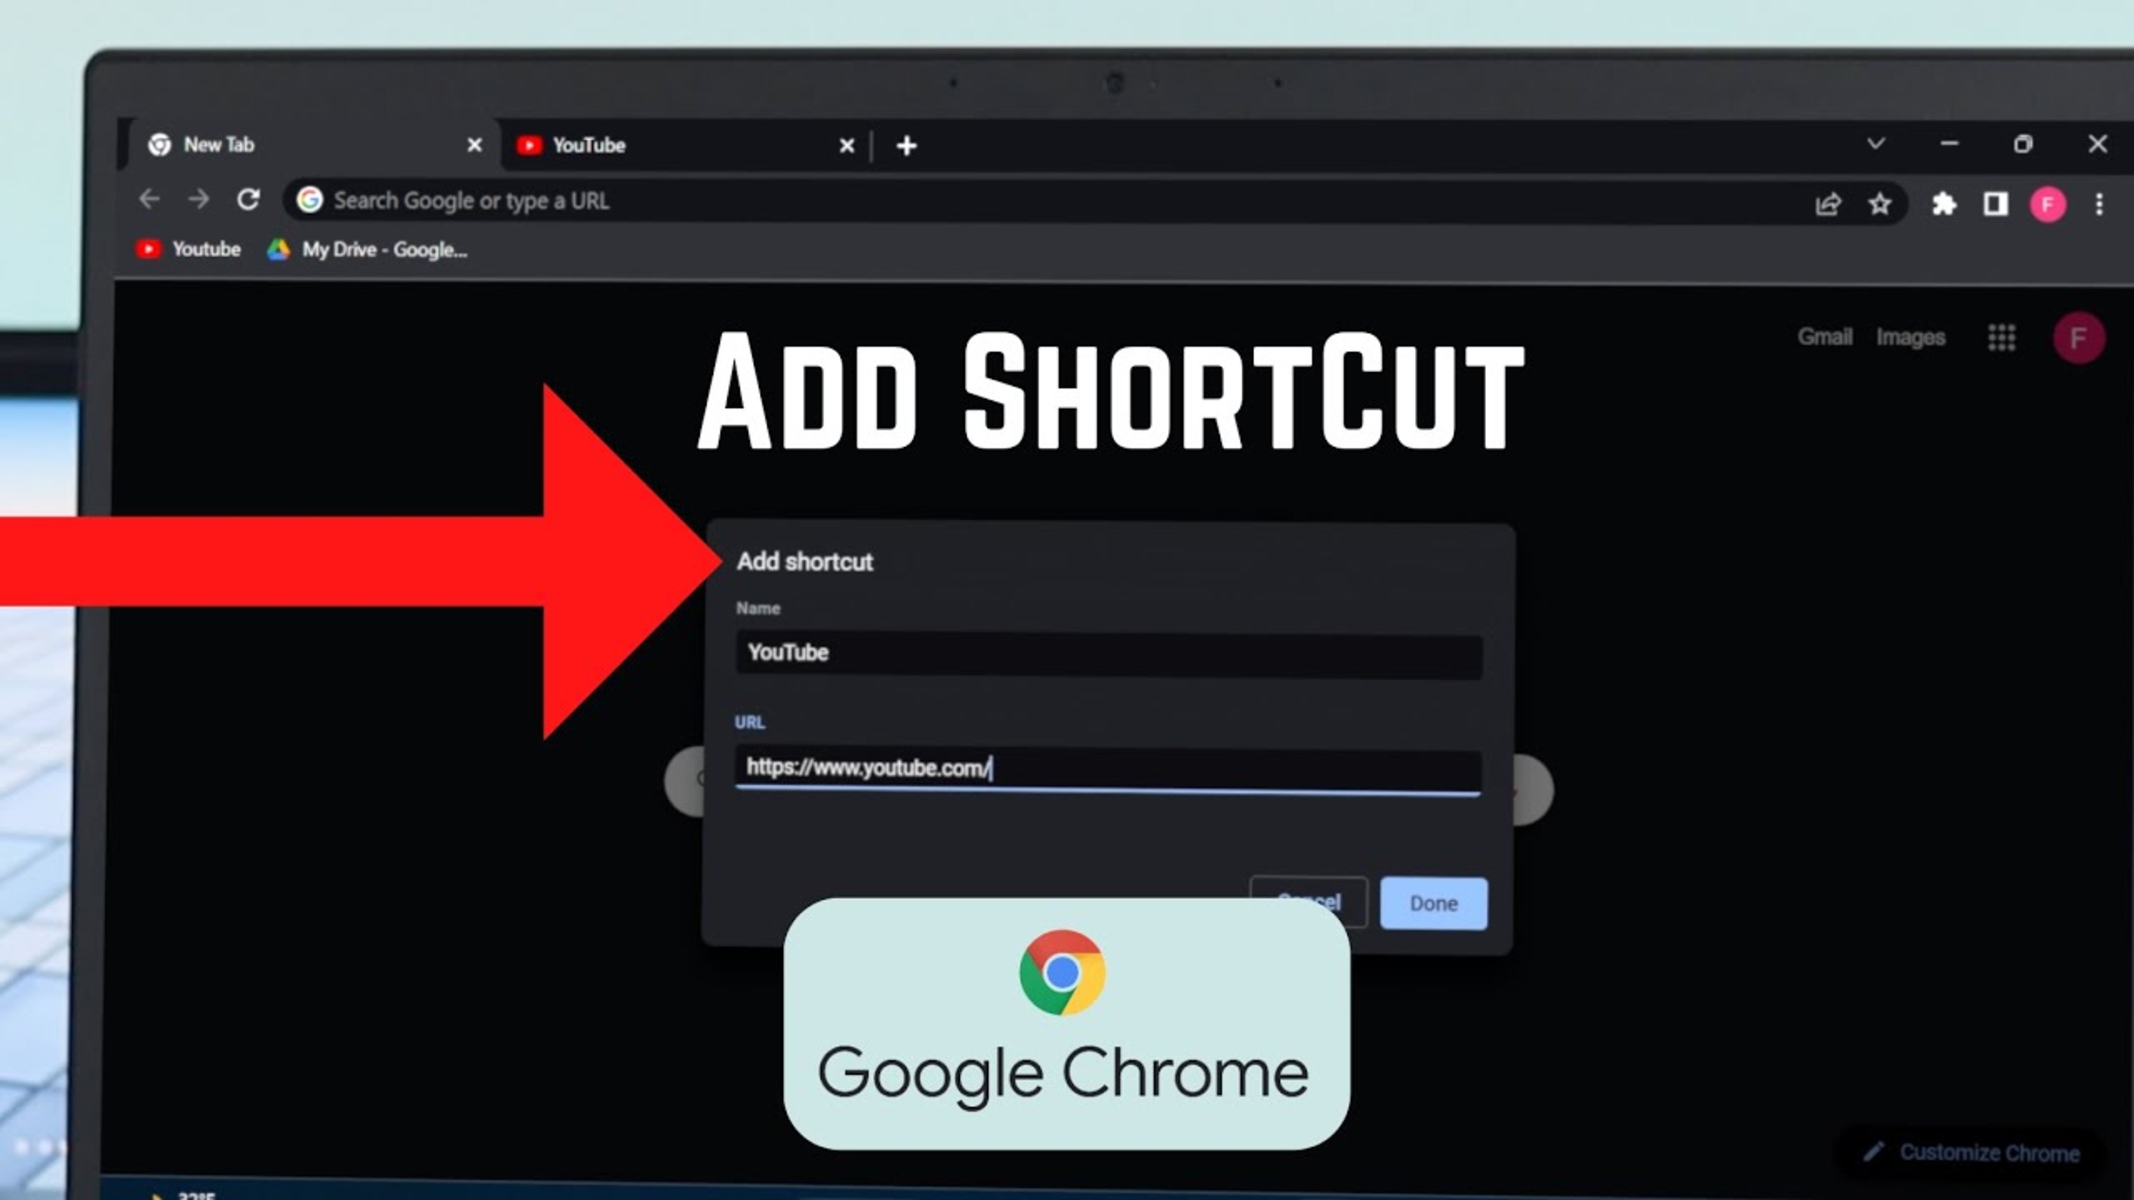 How Do I Add A Shortcut To Google Chrome?